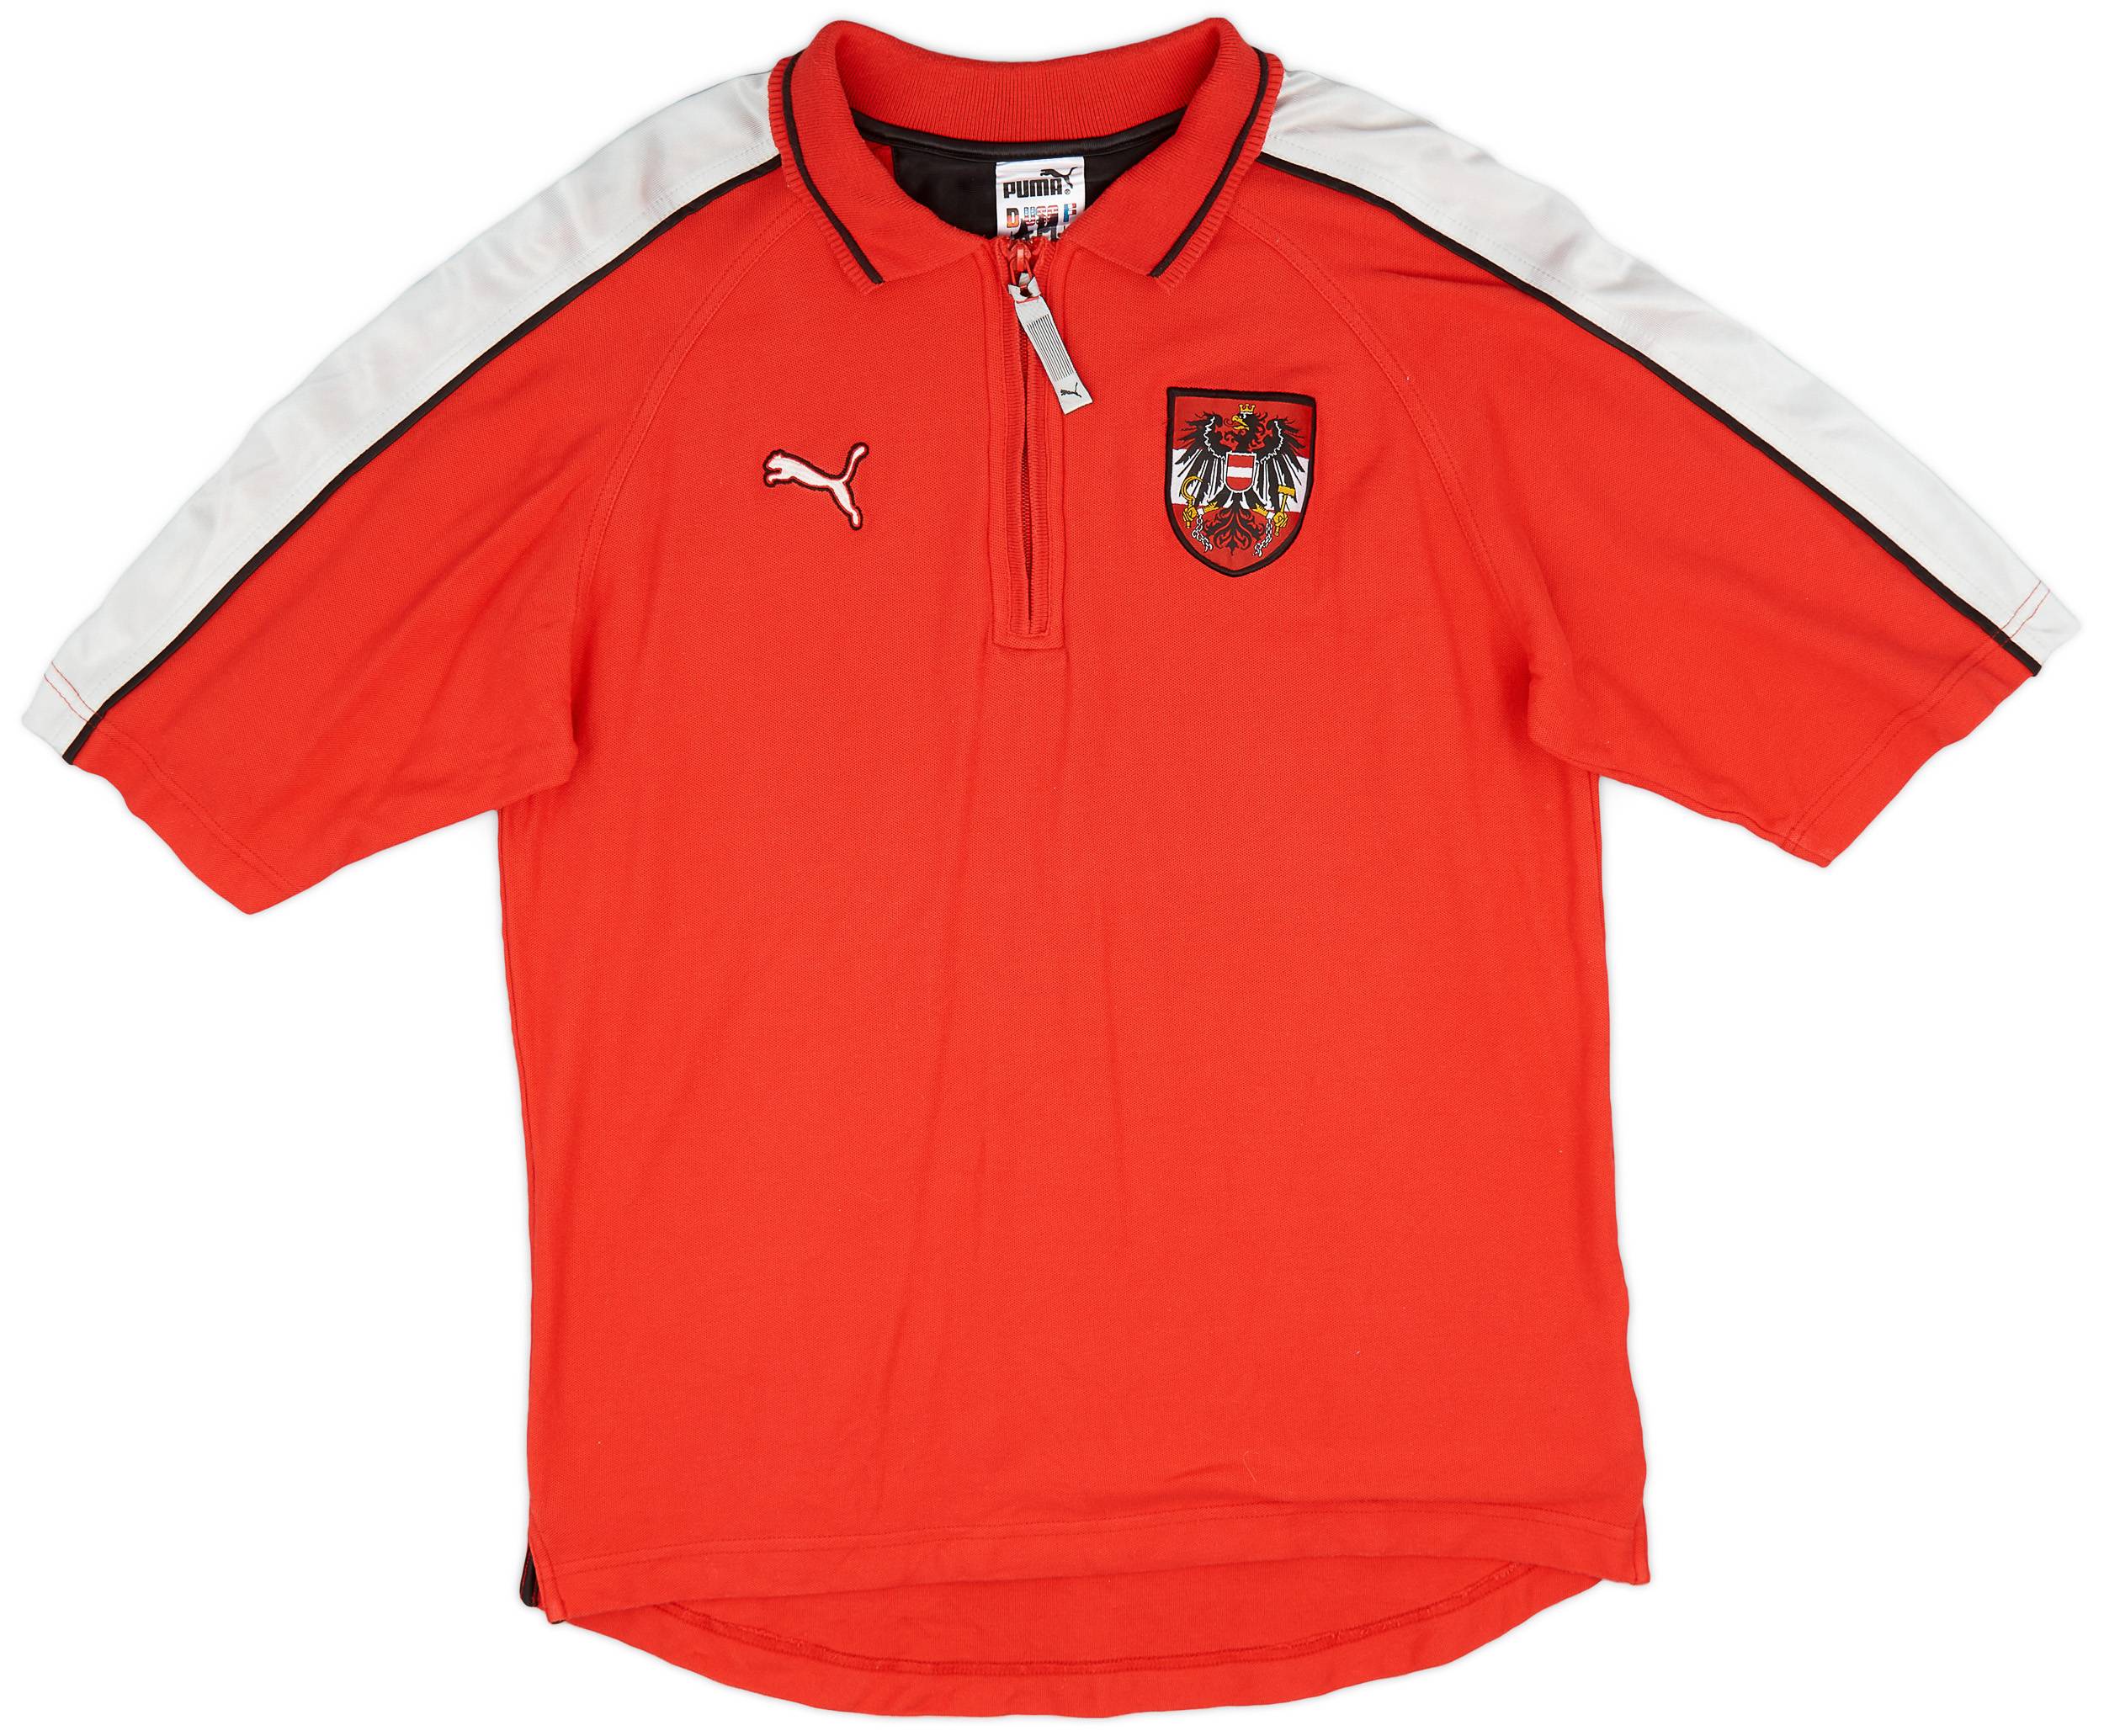 1998-00 Austria Puma 1/4 Zip Polo Shirt - 8/10 - (L)